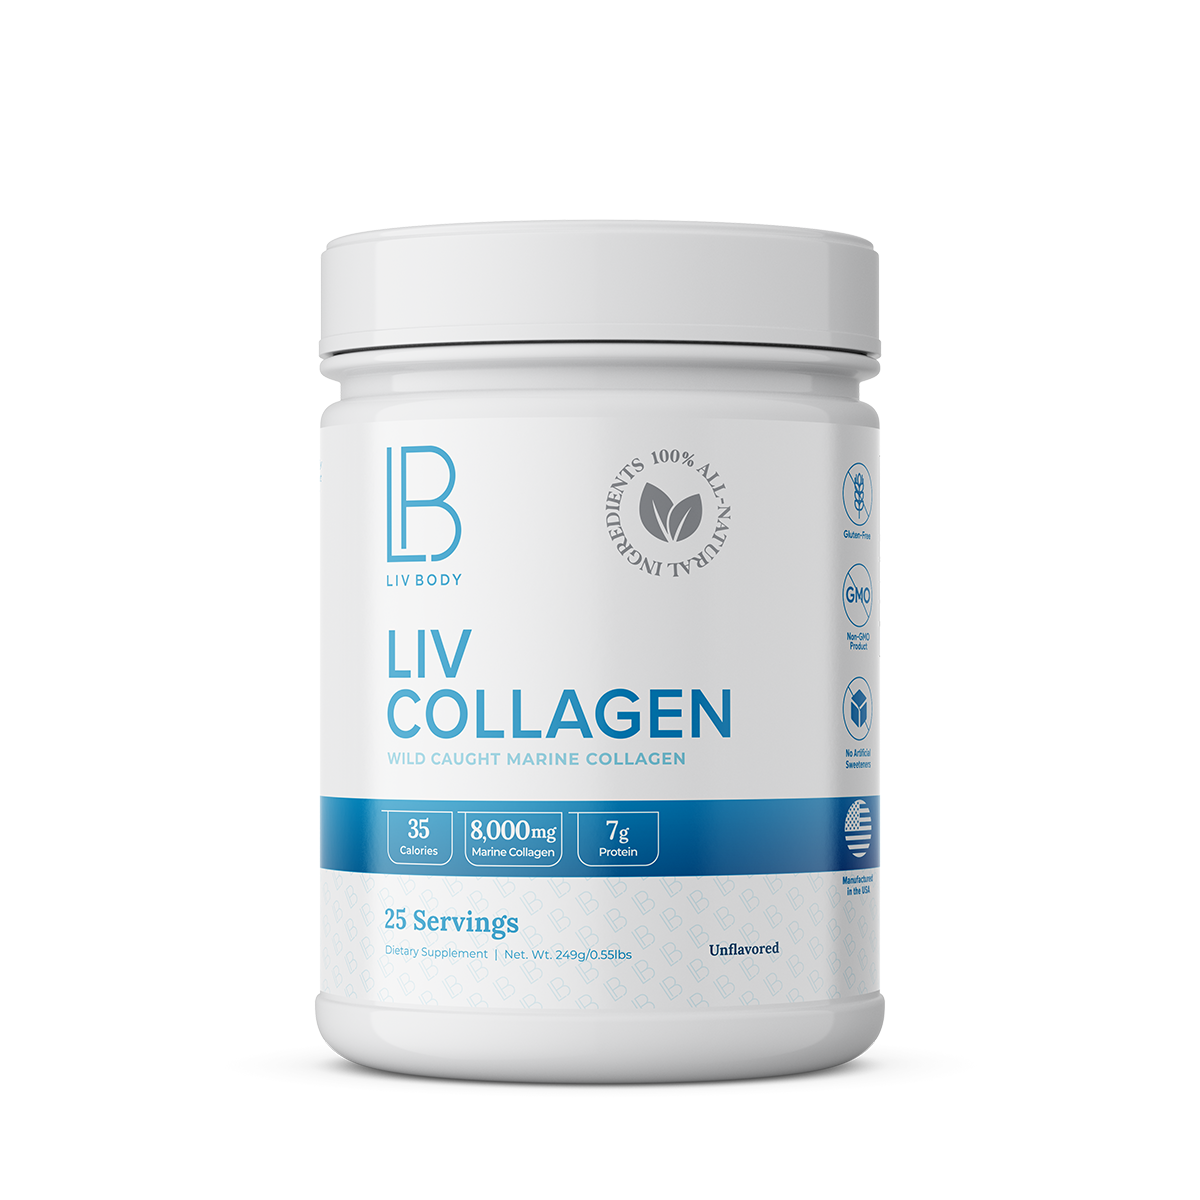 LIV Marine Collagen - Unflavored